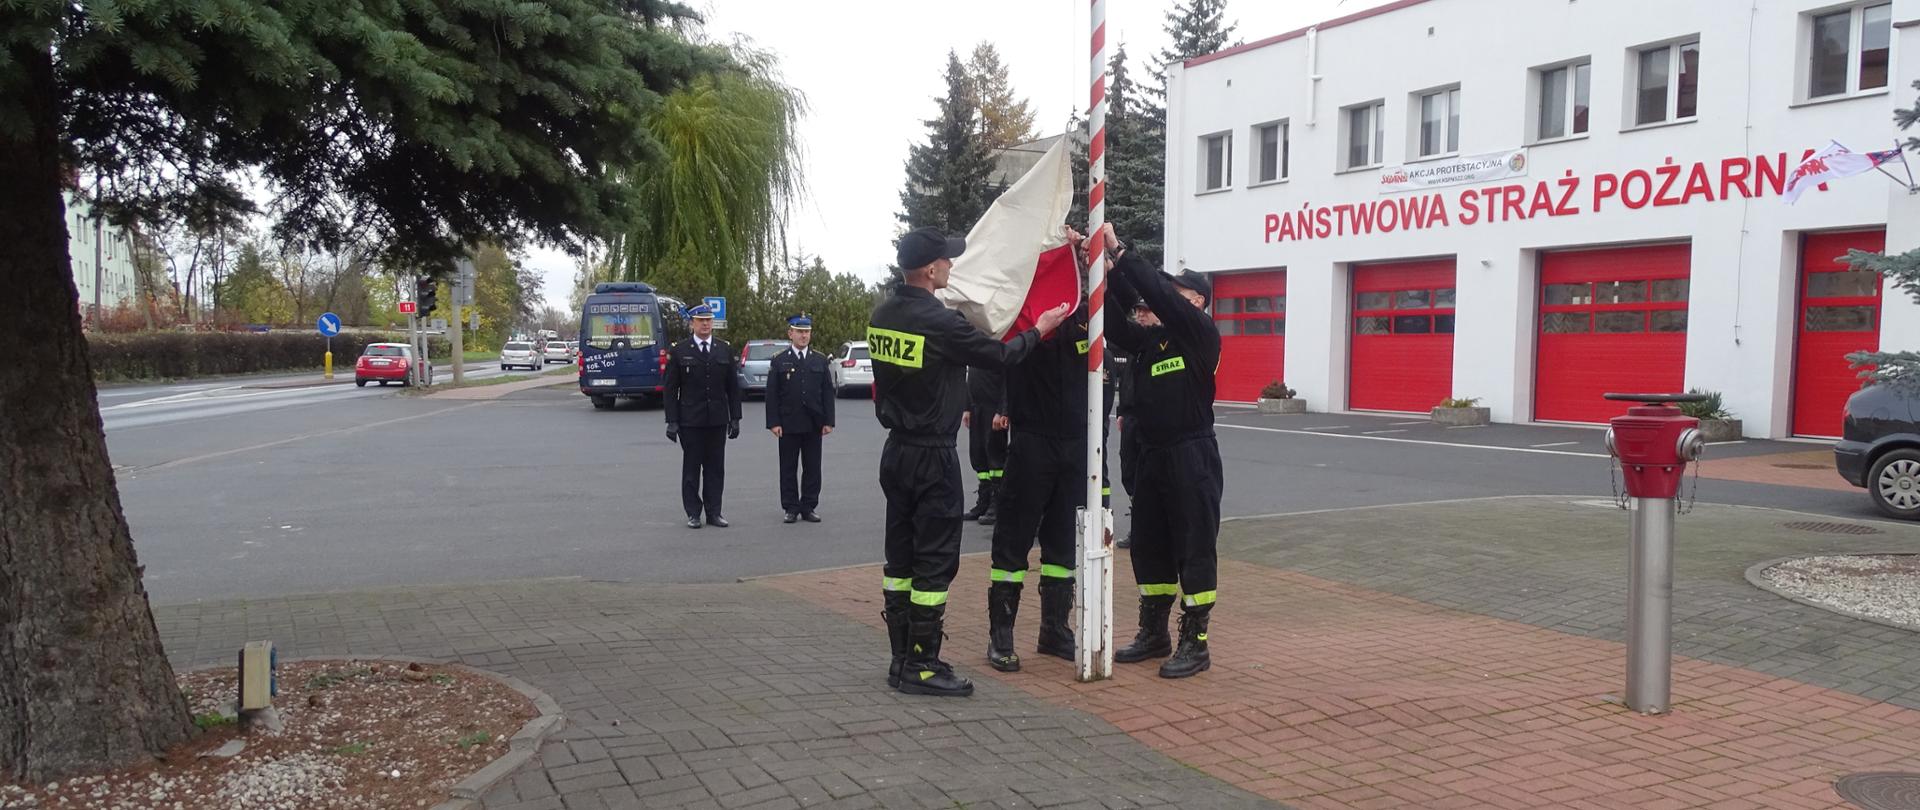 strażacy wciągają flagę na maszt 